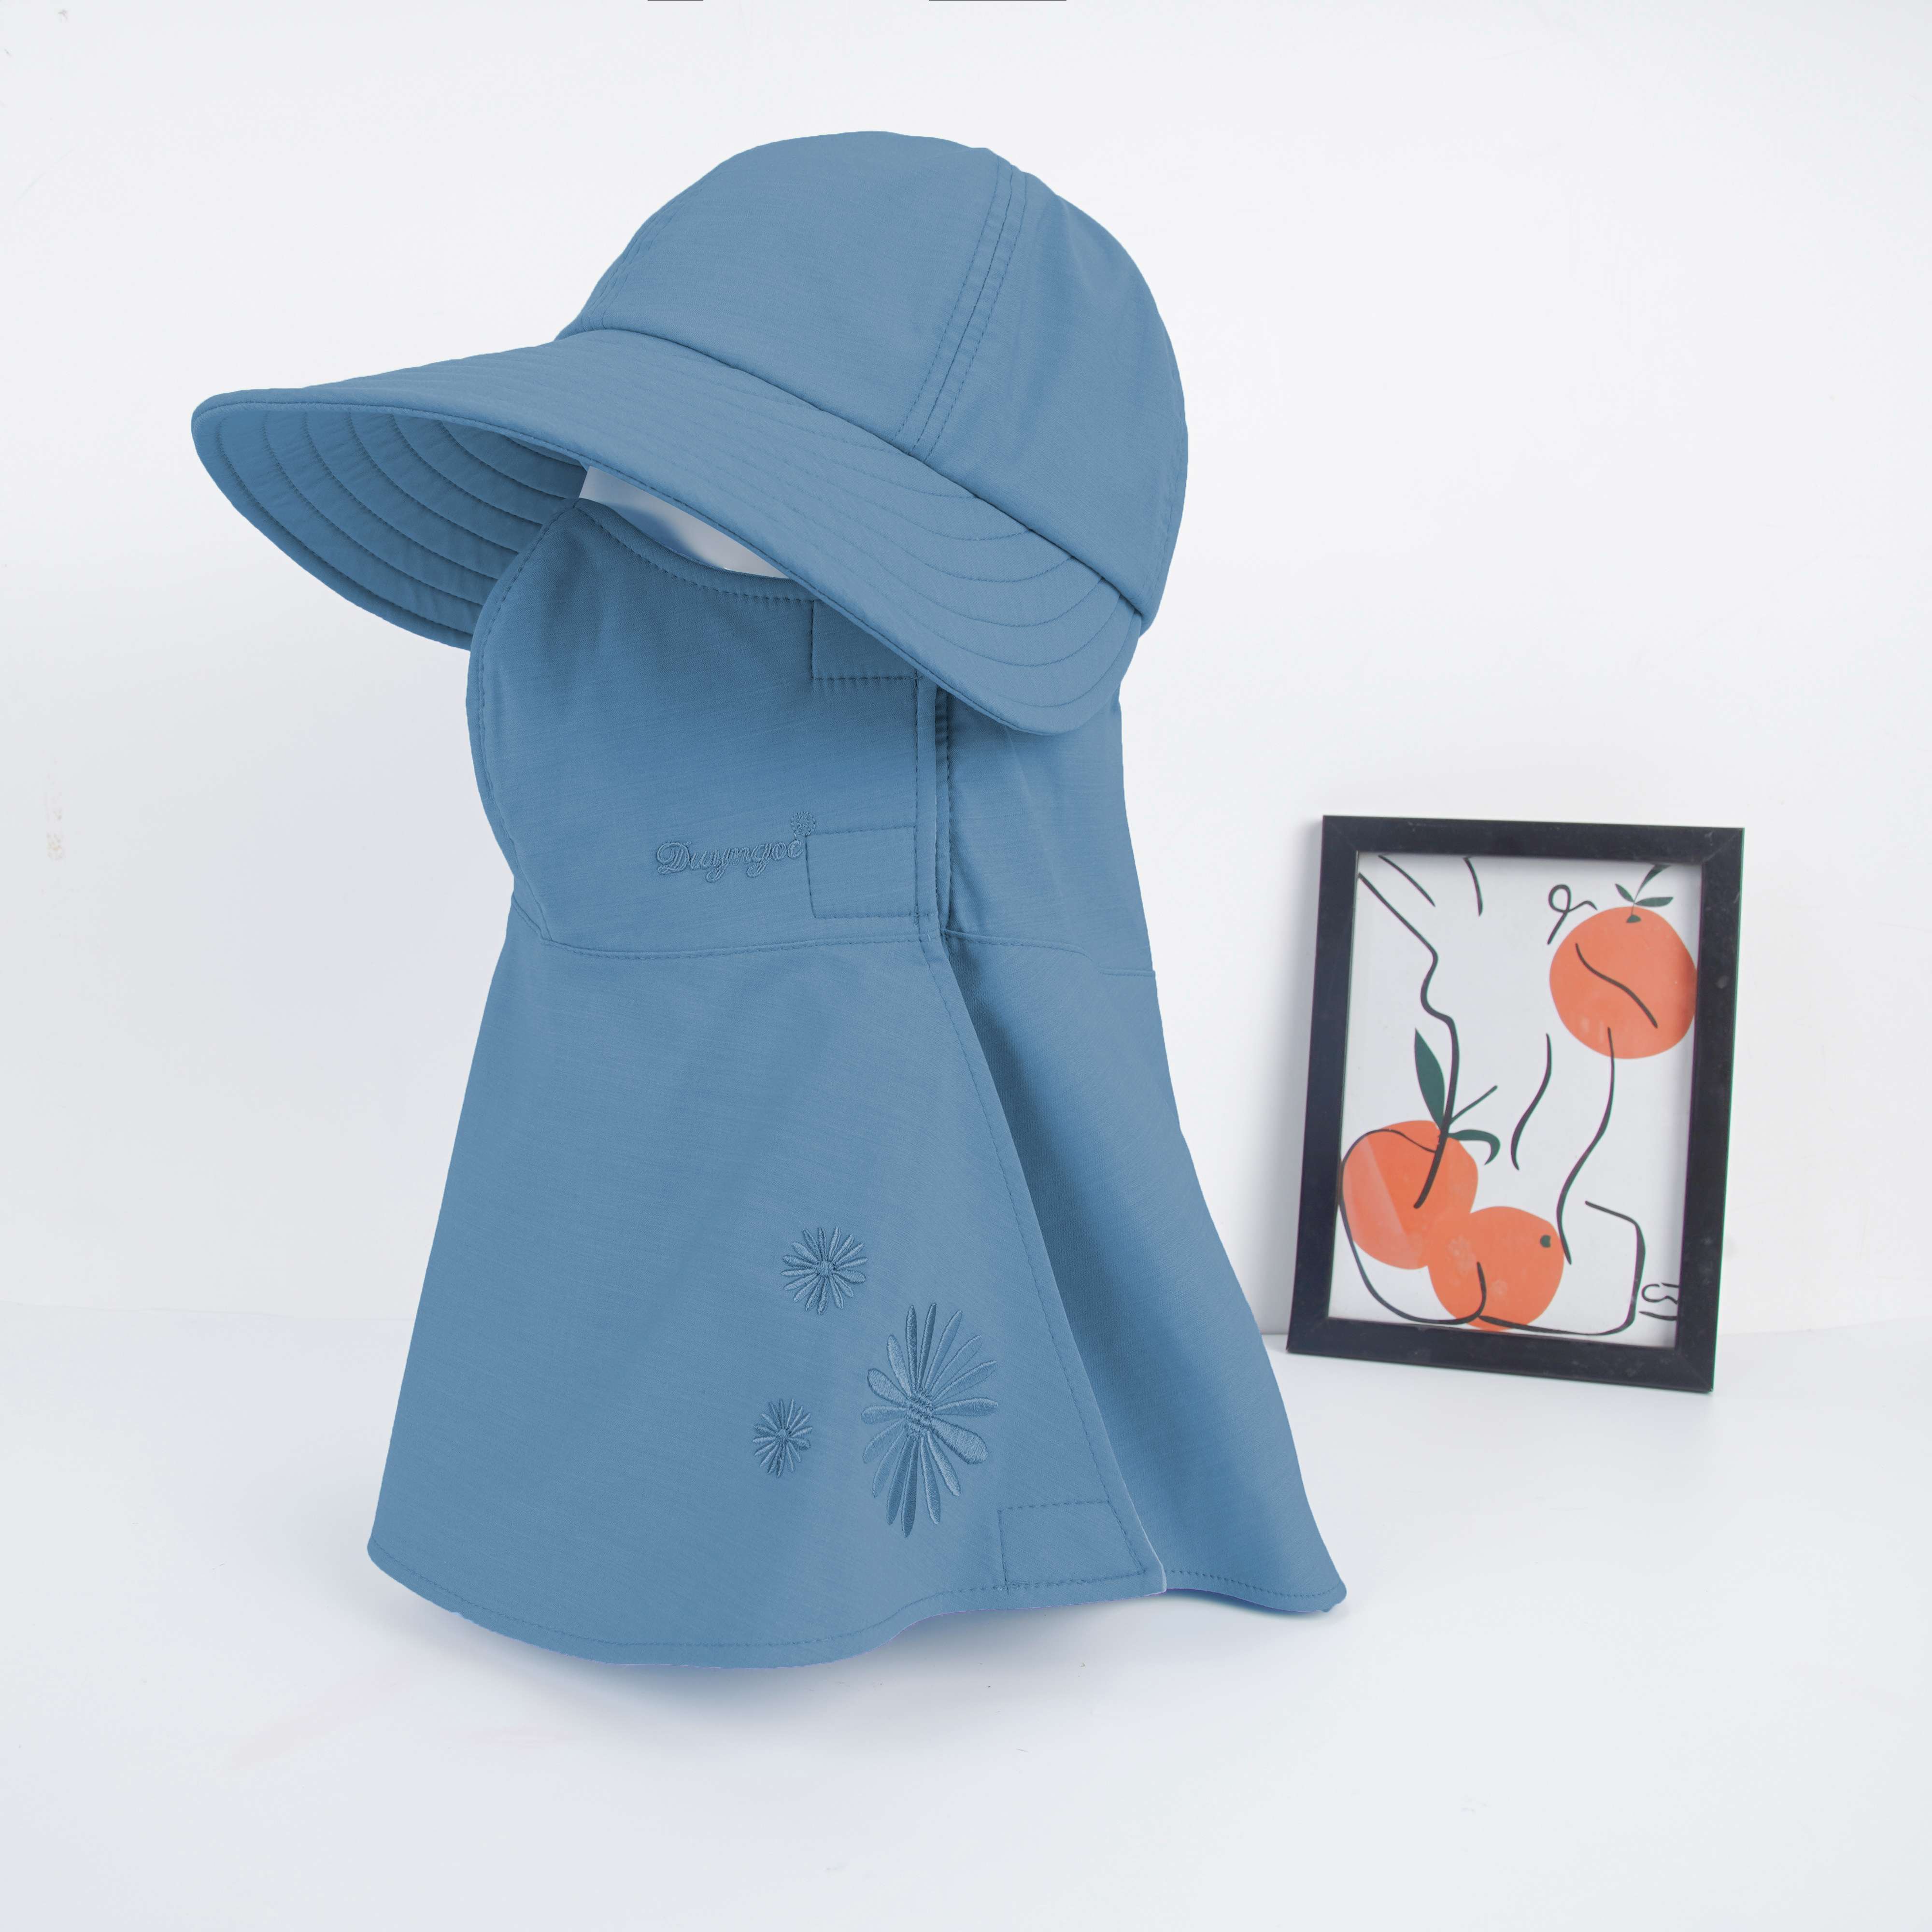 (MẪU MỚI) Mũ nón chống nắng 3n1 đa năng kèm khẩu trang cao cấp Duy Ngọc chất liệu vải BAMBOO cao cấp - Nón thiết kế sang trọng vải mềm mịn - SỐ LƯỢNG CÓ HẠN (3087)